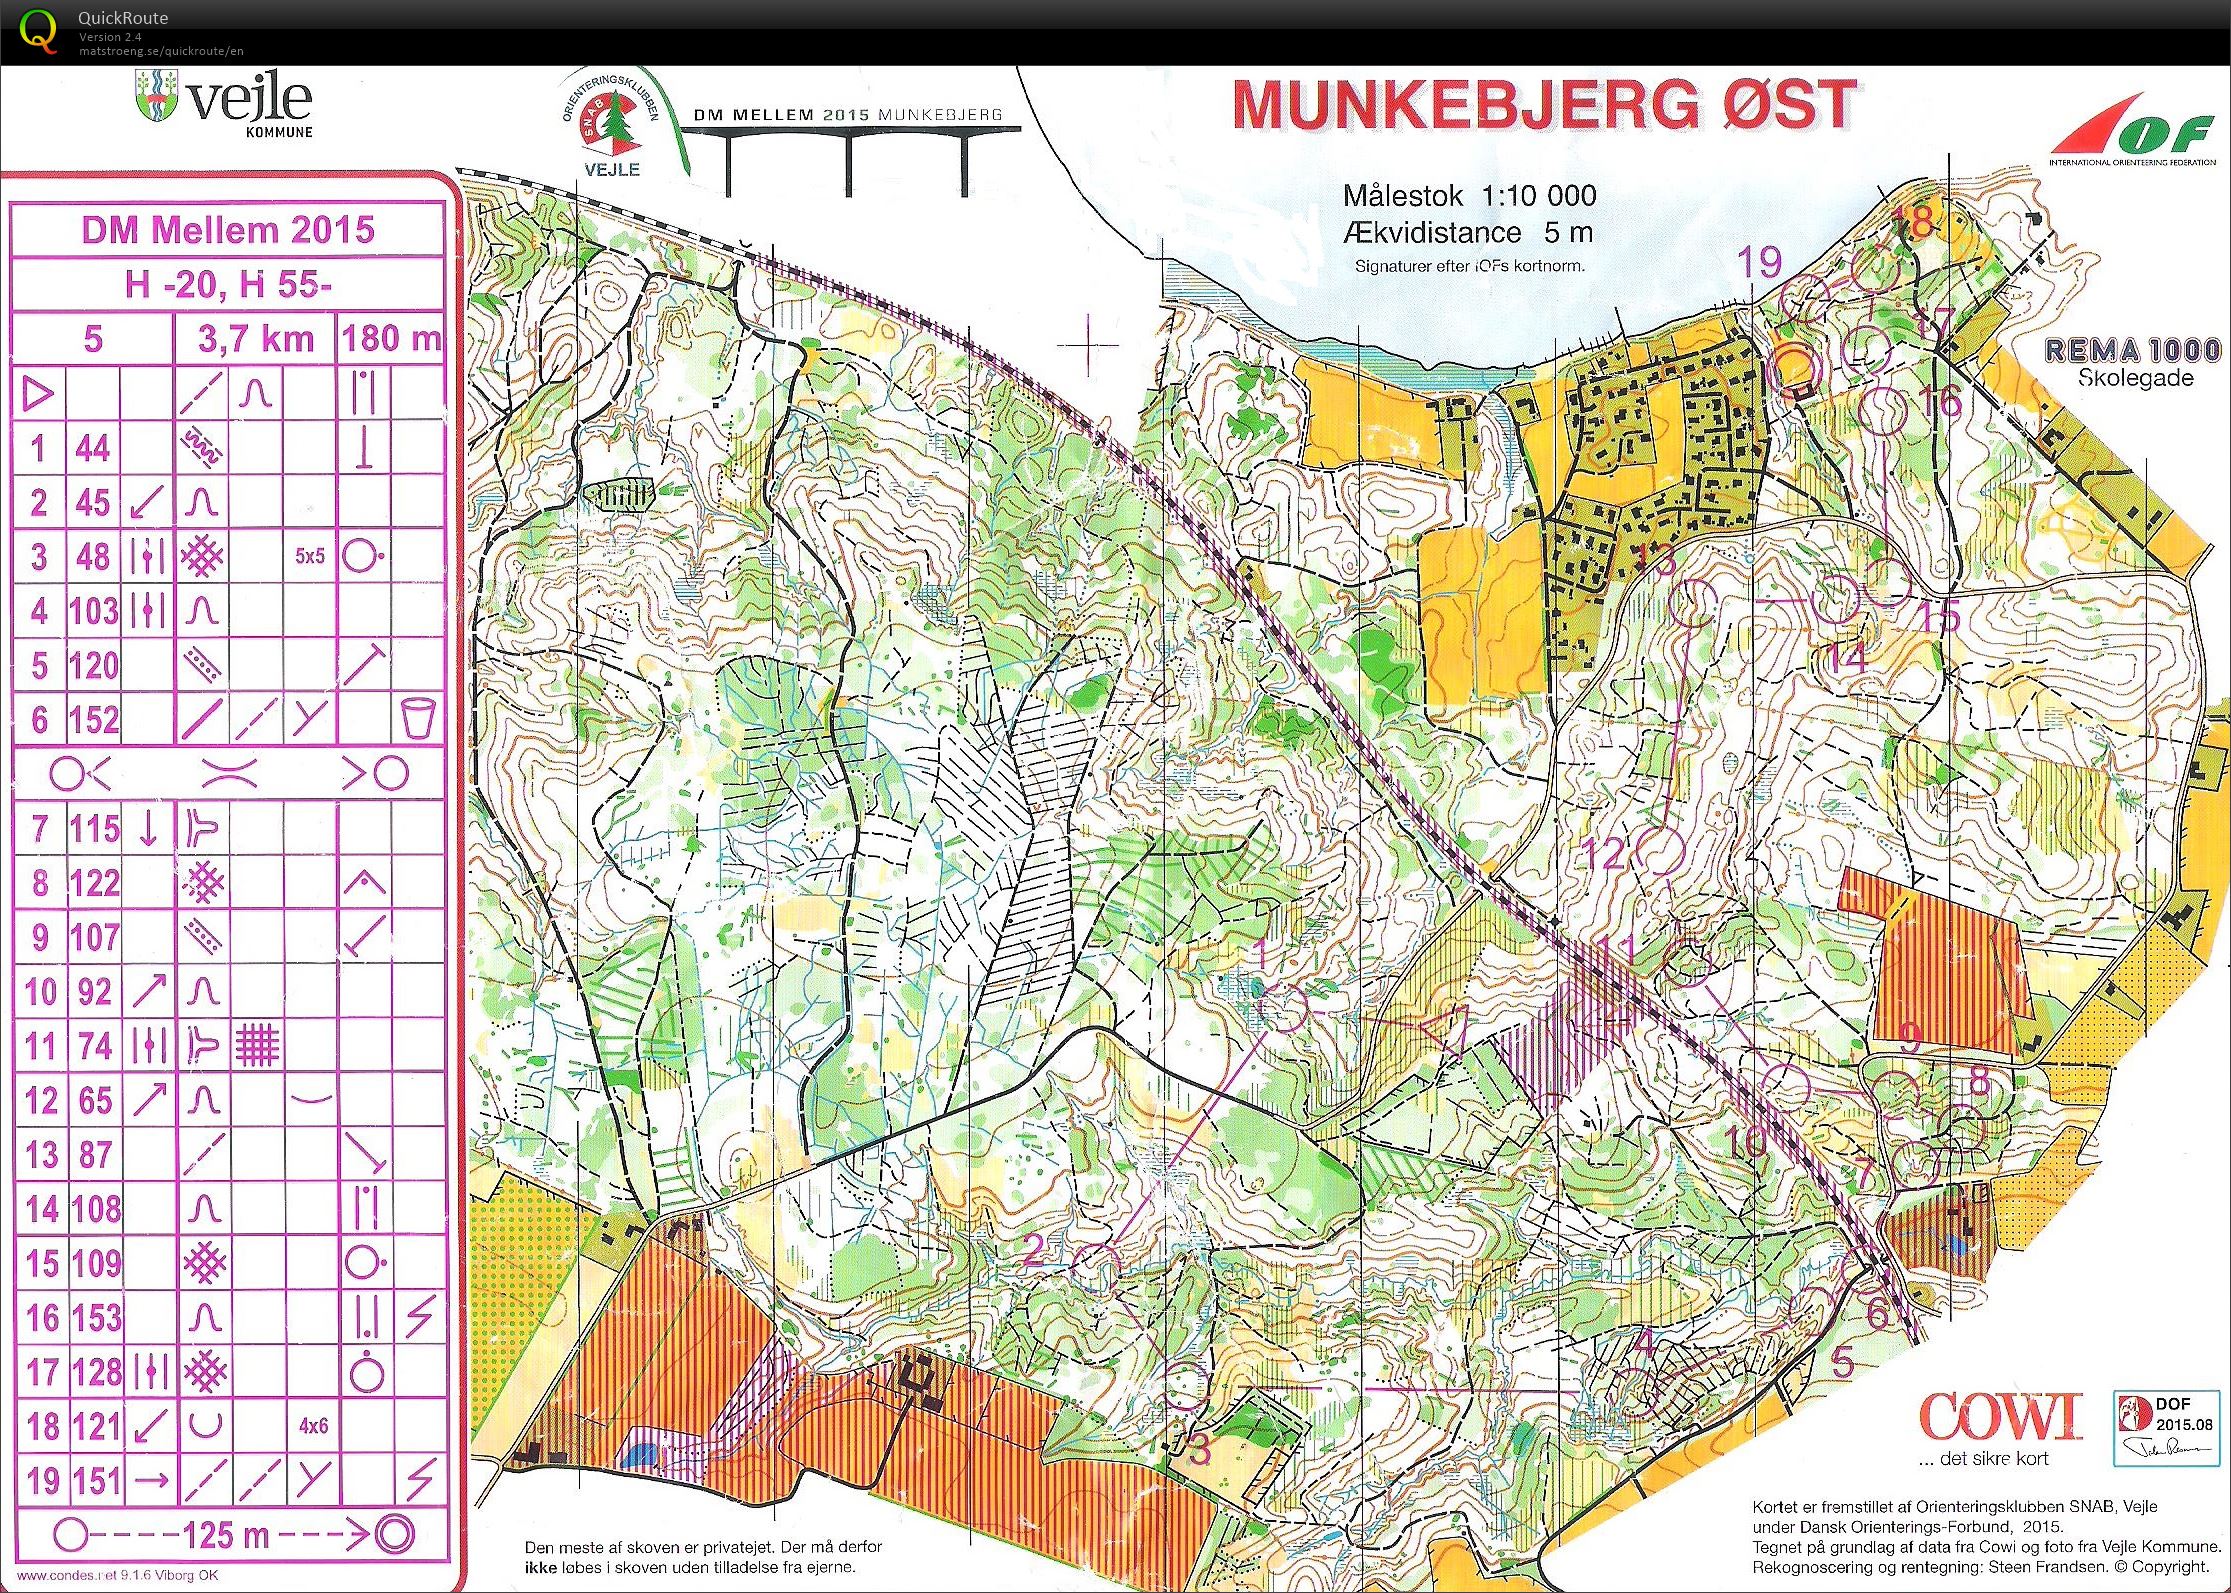 DM Mellem H55 Munkebjerg Øst (29-08-2015)